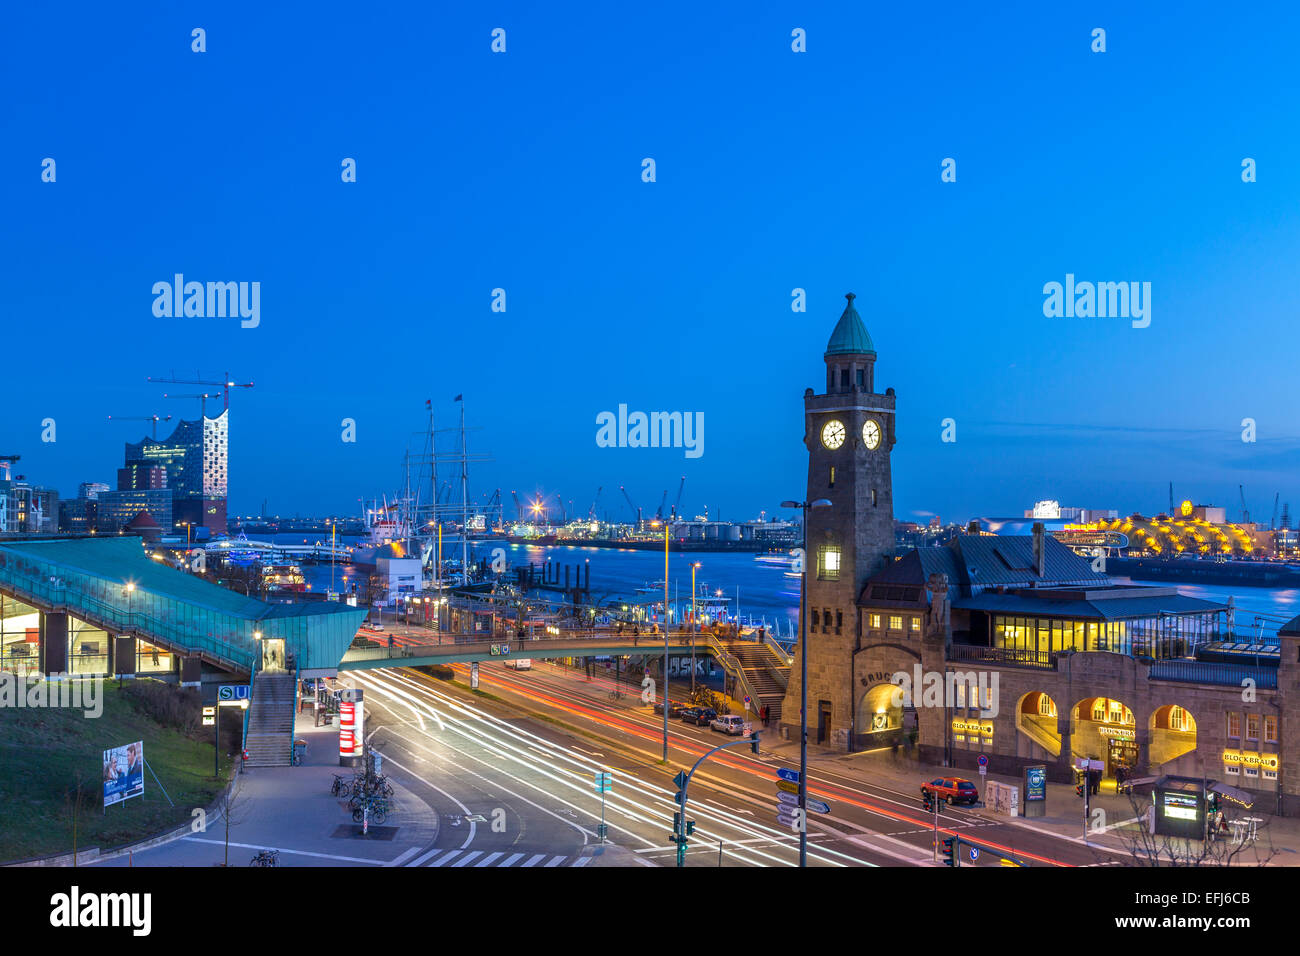 Der Hamburger Hafen mit Elbphilharmonie und Landungsbrücken, Landungsbrücken, Hamburg, Deutschland Stockfoto